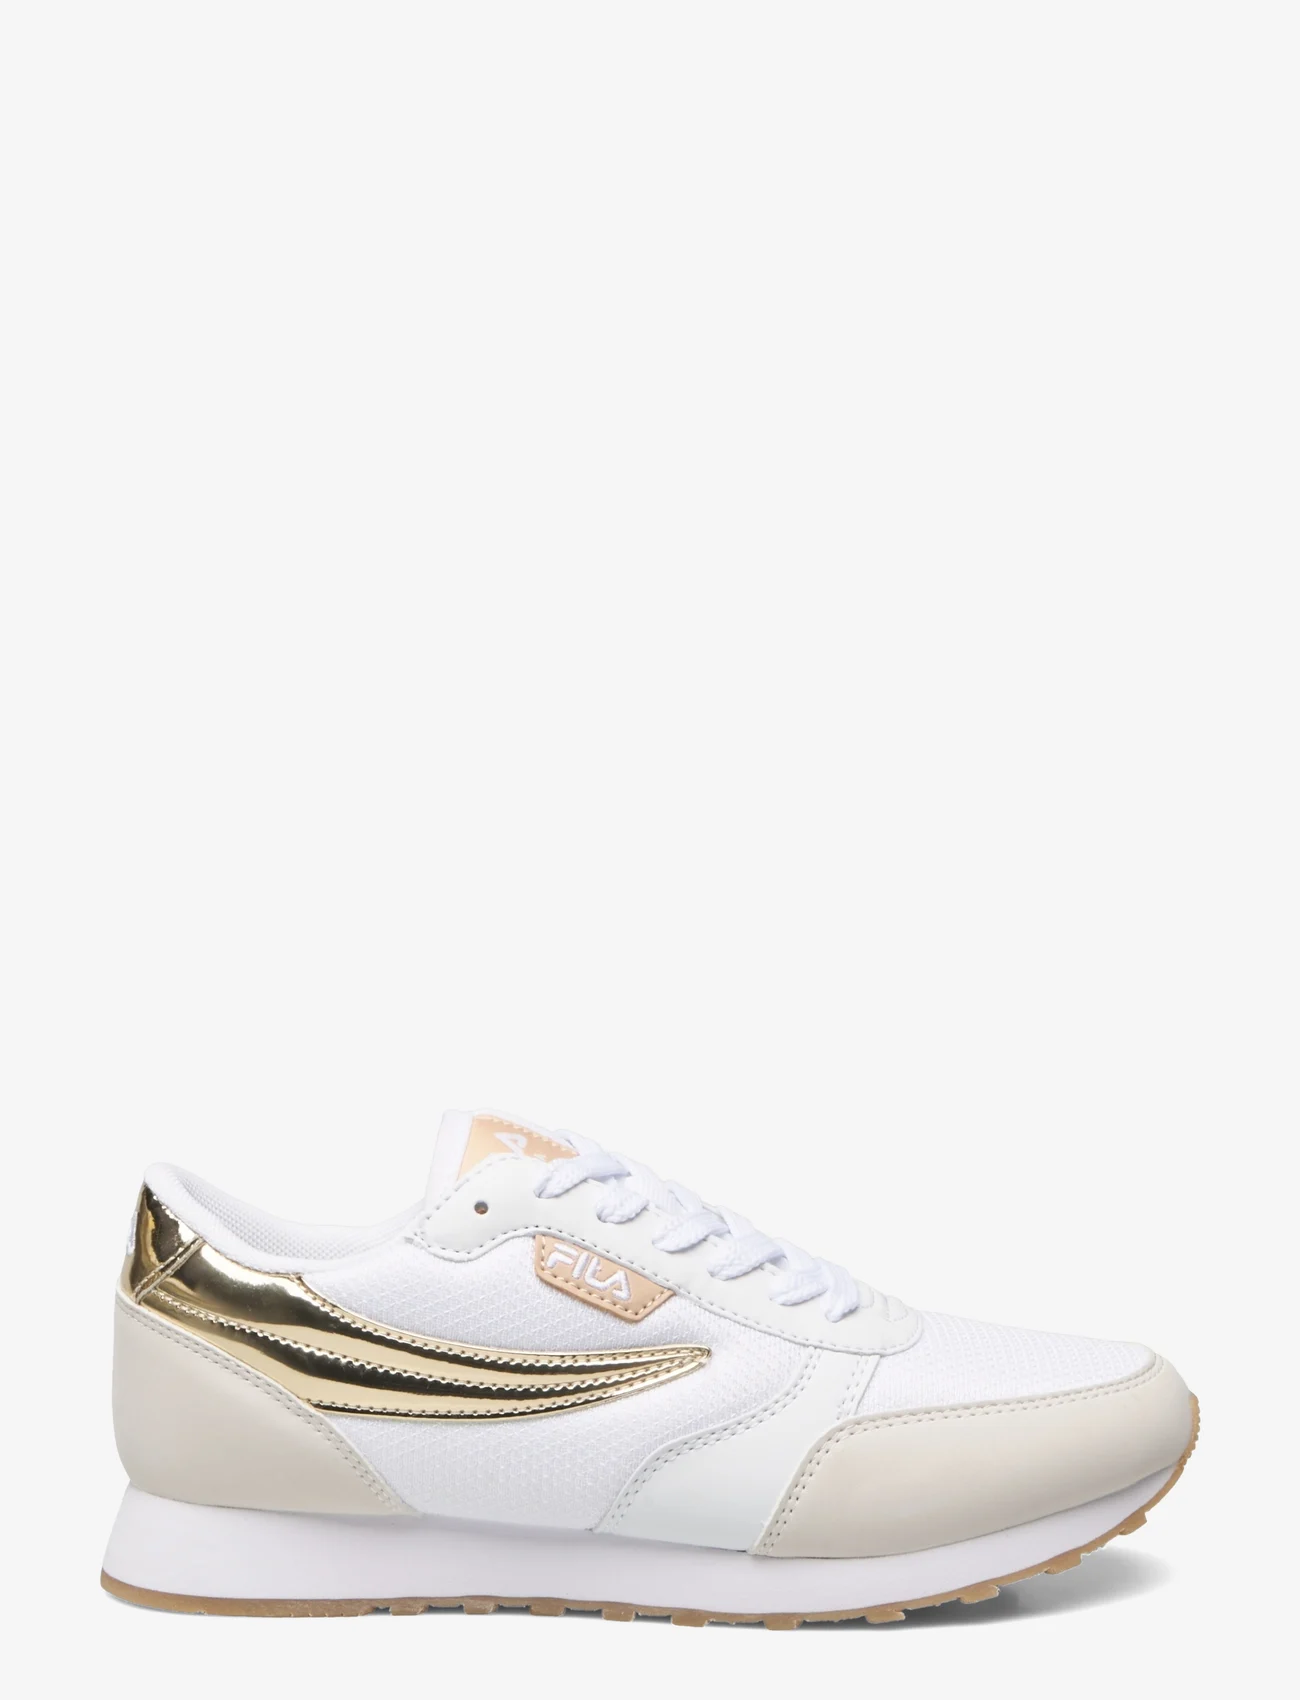 FILA - ORBIT F wmn - low top sneakers - white-warm sand - 1